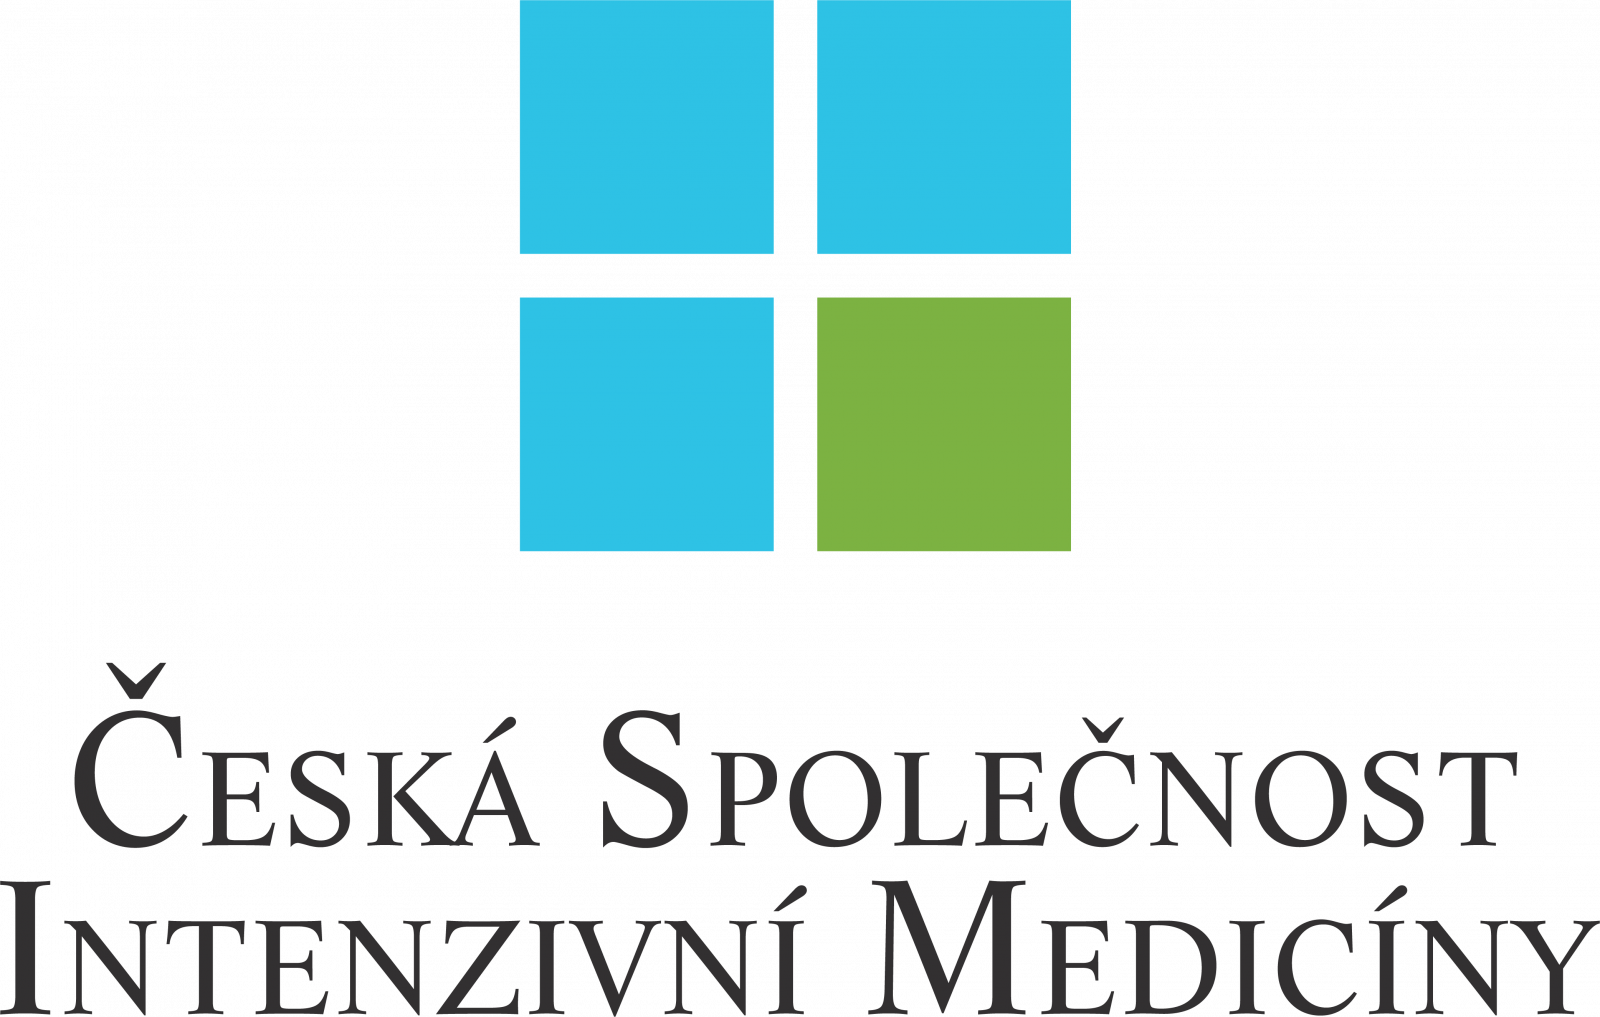 Česká společnost intenzivní medicíny (ČSIM)